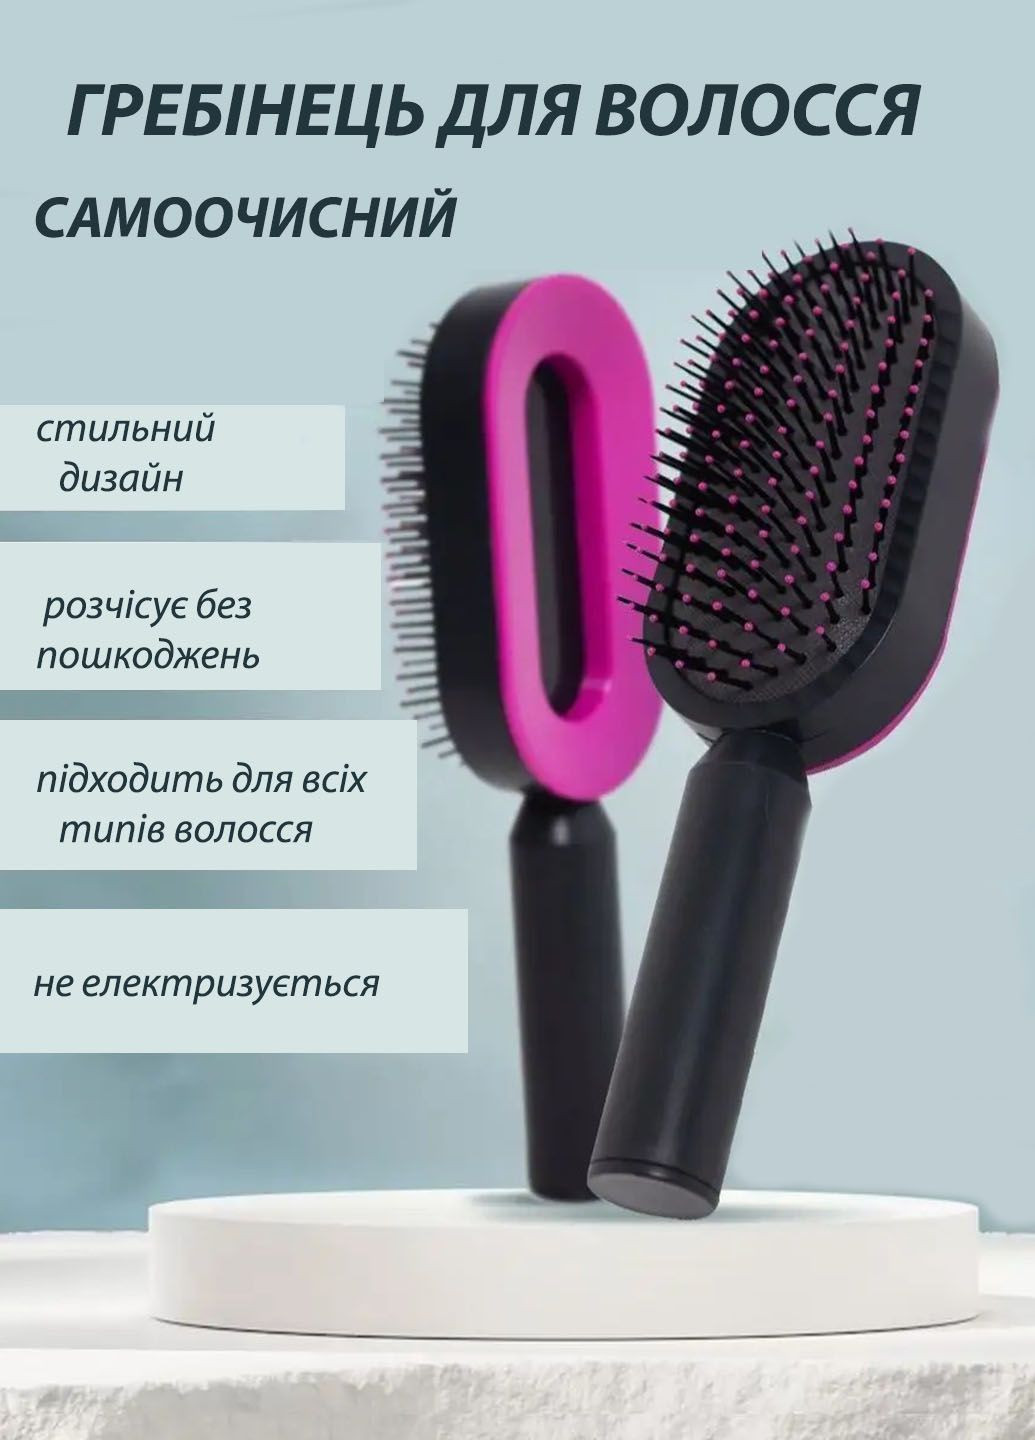 Професійний гребінець для волосся Good Super Brush для розплутування волосся самоочисна Idea (290561992)